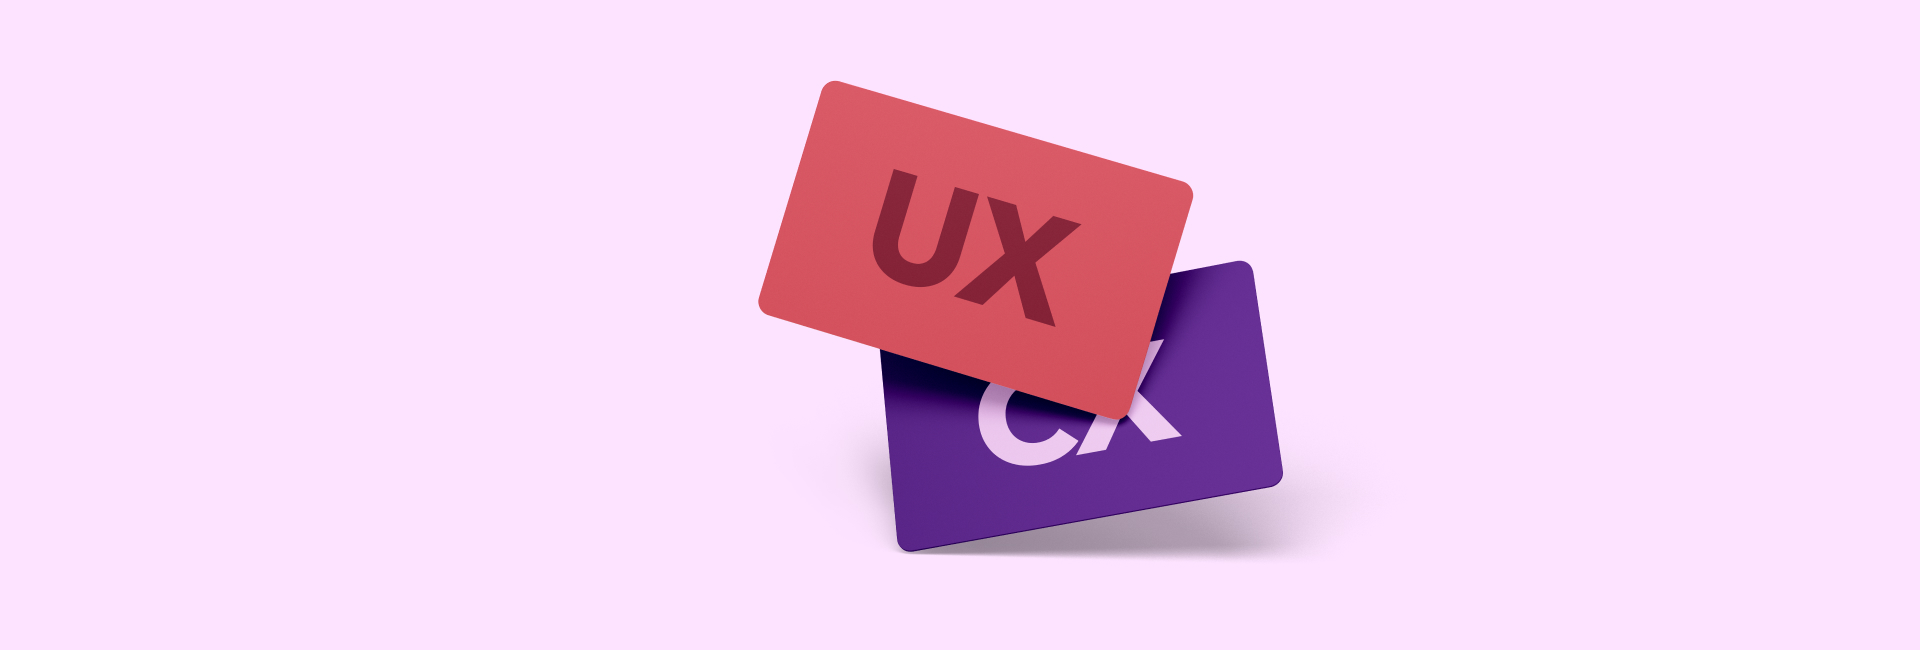 Trải nghiệm khách hàng (CX) khác gì với trải nghiệm người dùng (UX)? UI UX CX